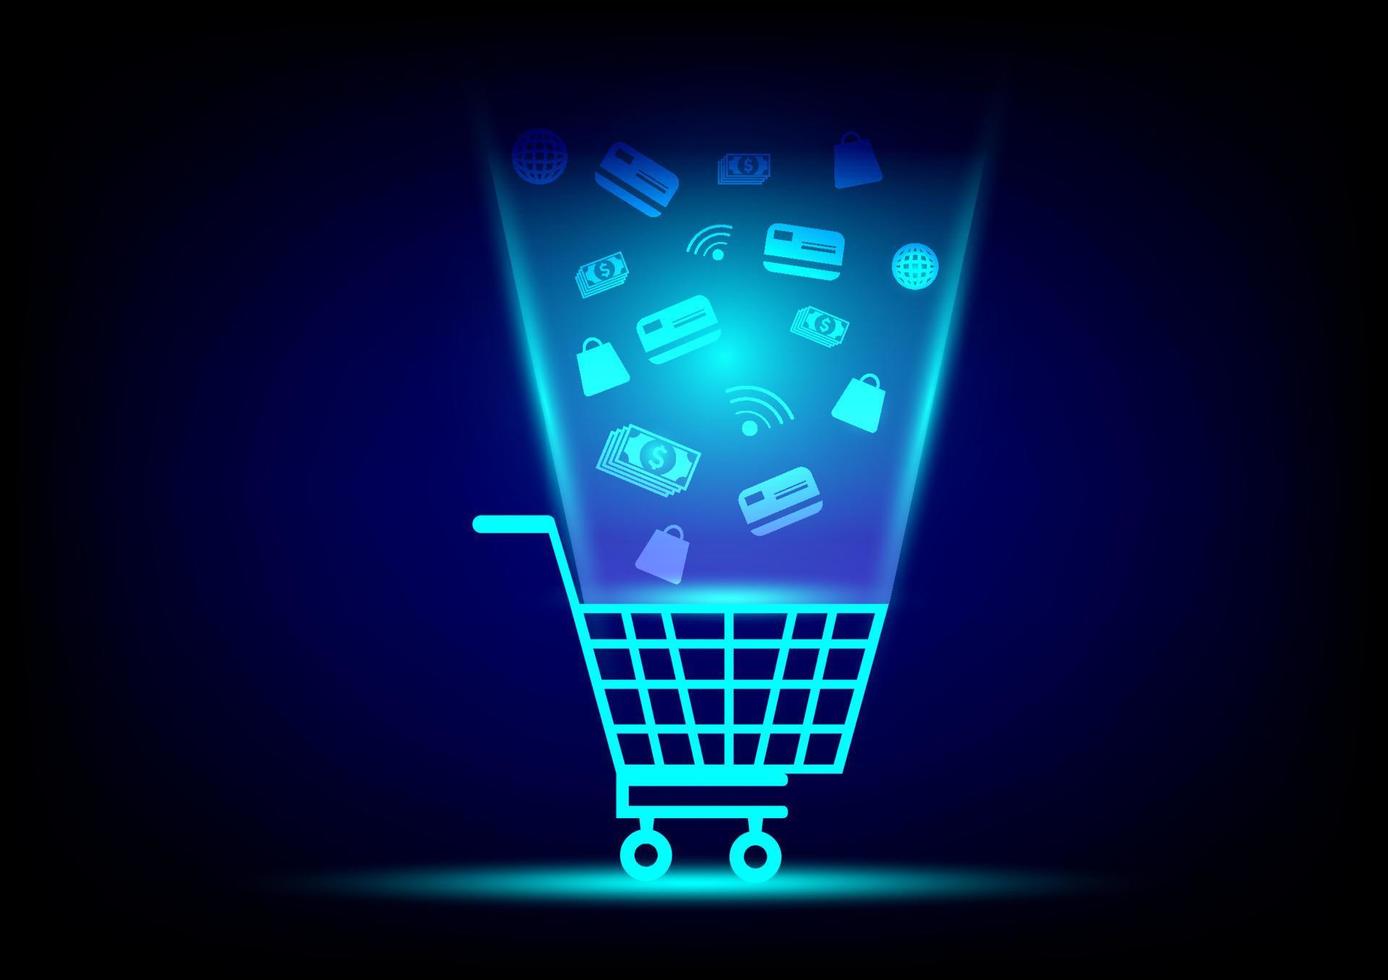 Online-Shop-Konzept. virtuelles Symbol für Warenkorb, Suche, Kreditkarte und Tasche auf blauem Hintergrund. digitales Marketing, E-Commerce. Quarantäne, um Leben vor Coronavirus zu retten. vektor